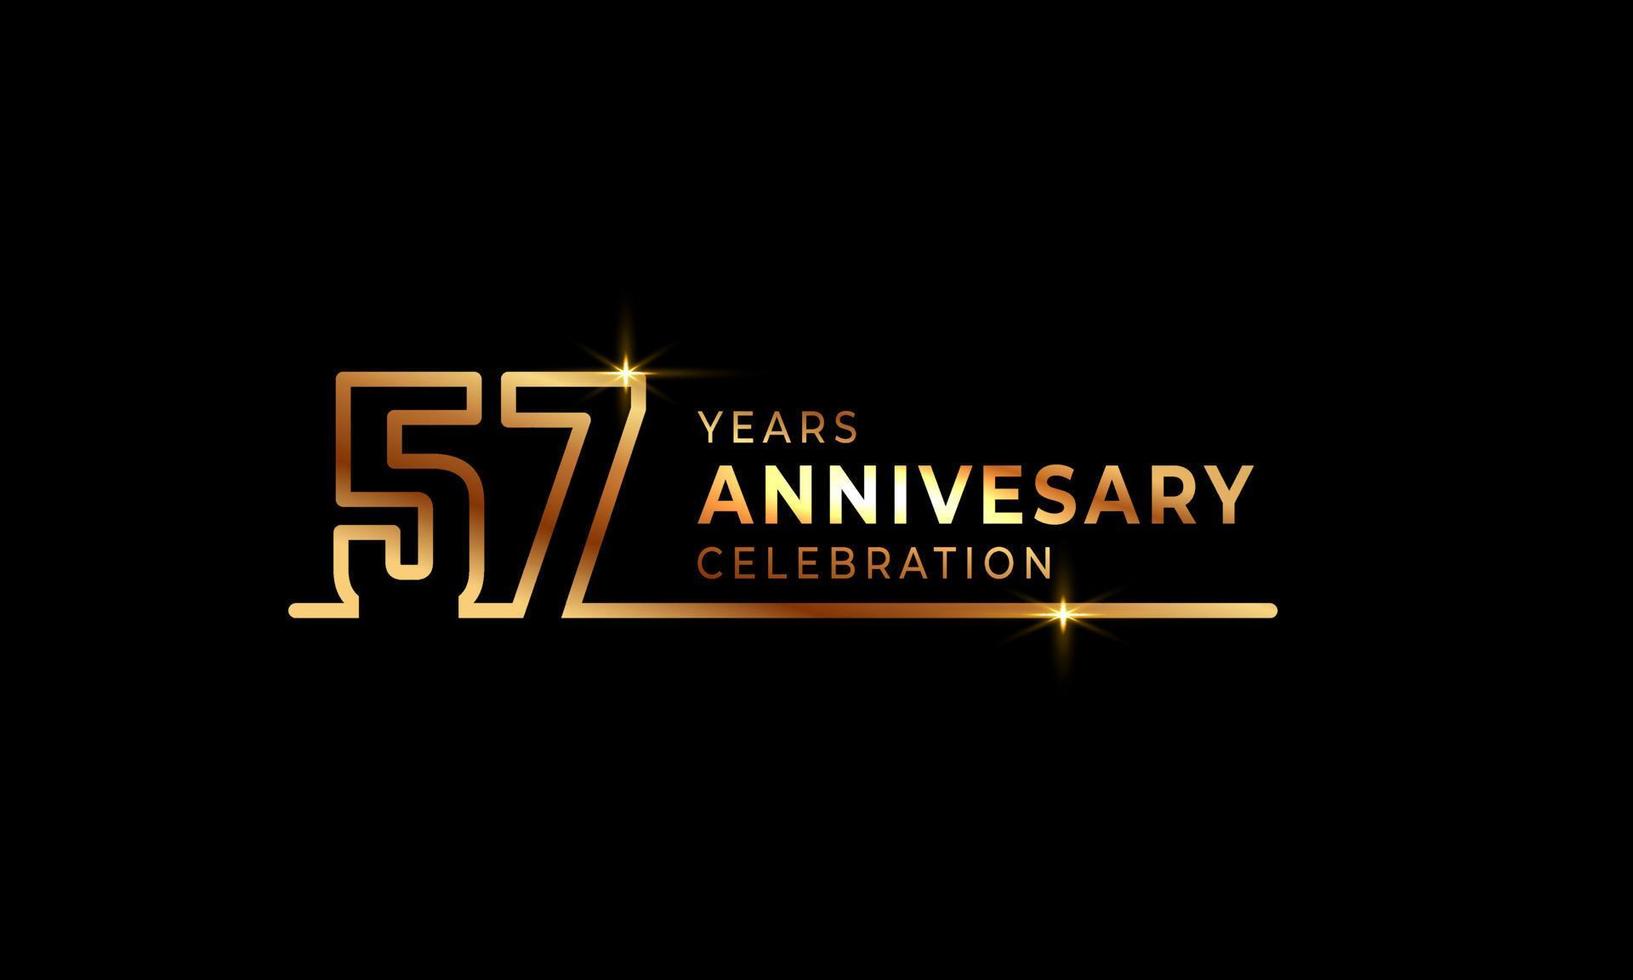 57-jarig jubileumviering logo met gouden gekleurde lettertypenummers gemaakt van één verbonden lijn voor feestgebeurtenis, bruiloft, wenskaart en uitnodiging geïsoleerd op donkere achtergrond vector